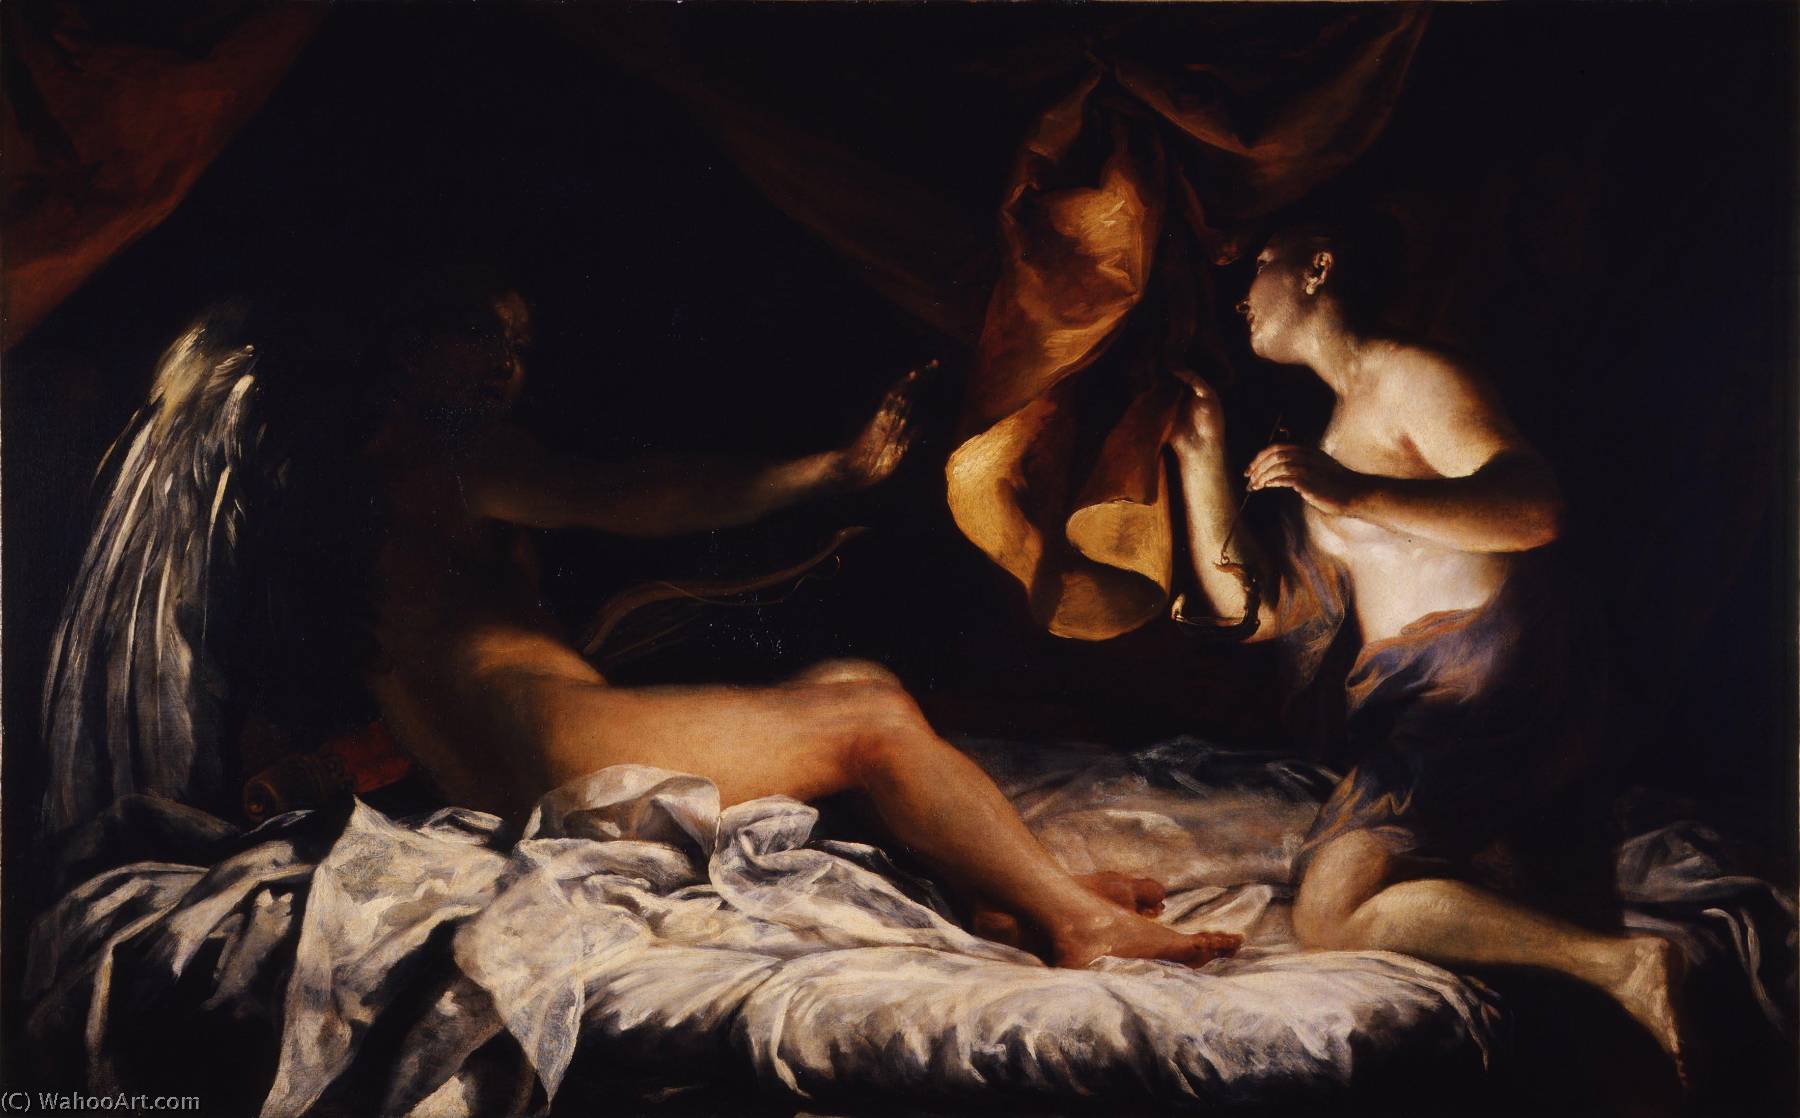 WikiOO.org - אנציקלופדיה לאמנויות יפות - ציור, יצירות אמנות Giuseppe Maria Crespi - Italian Amore e Psiche Cupid and Psyche